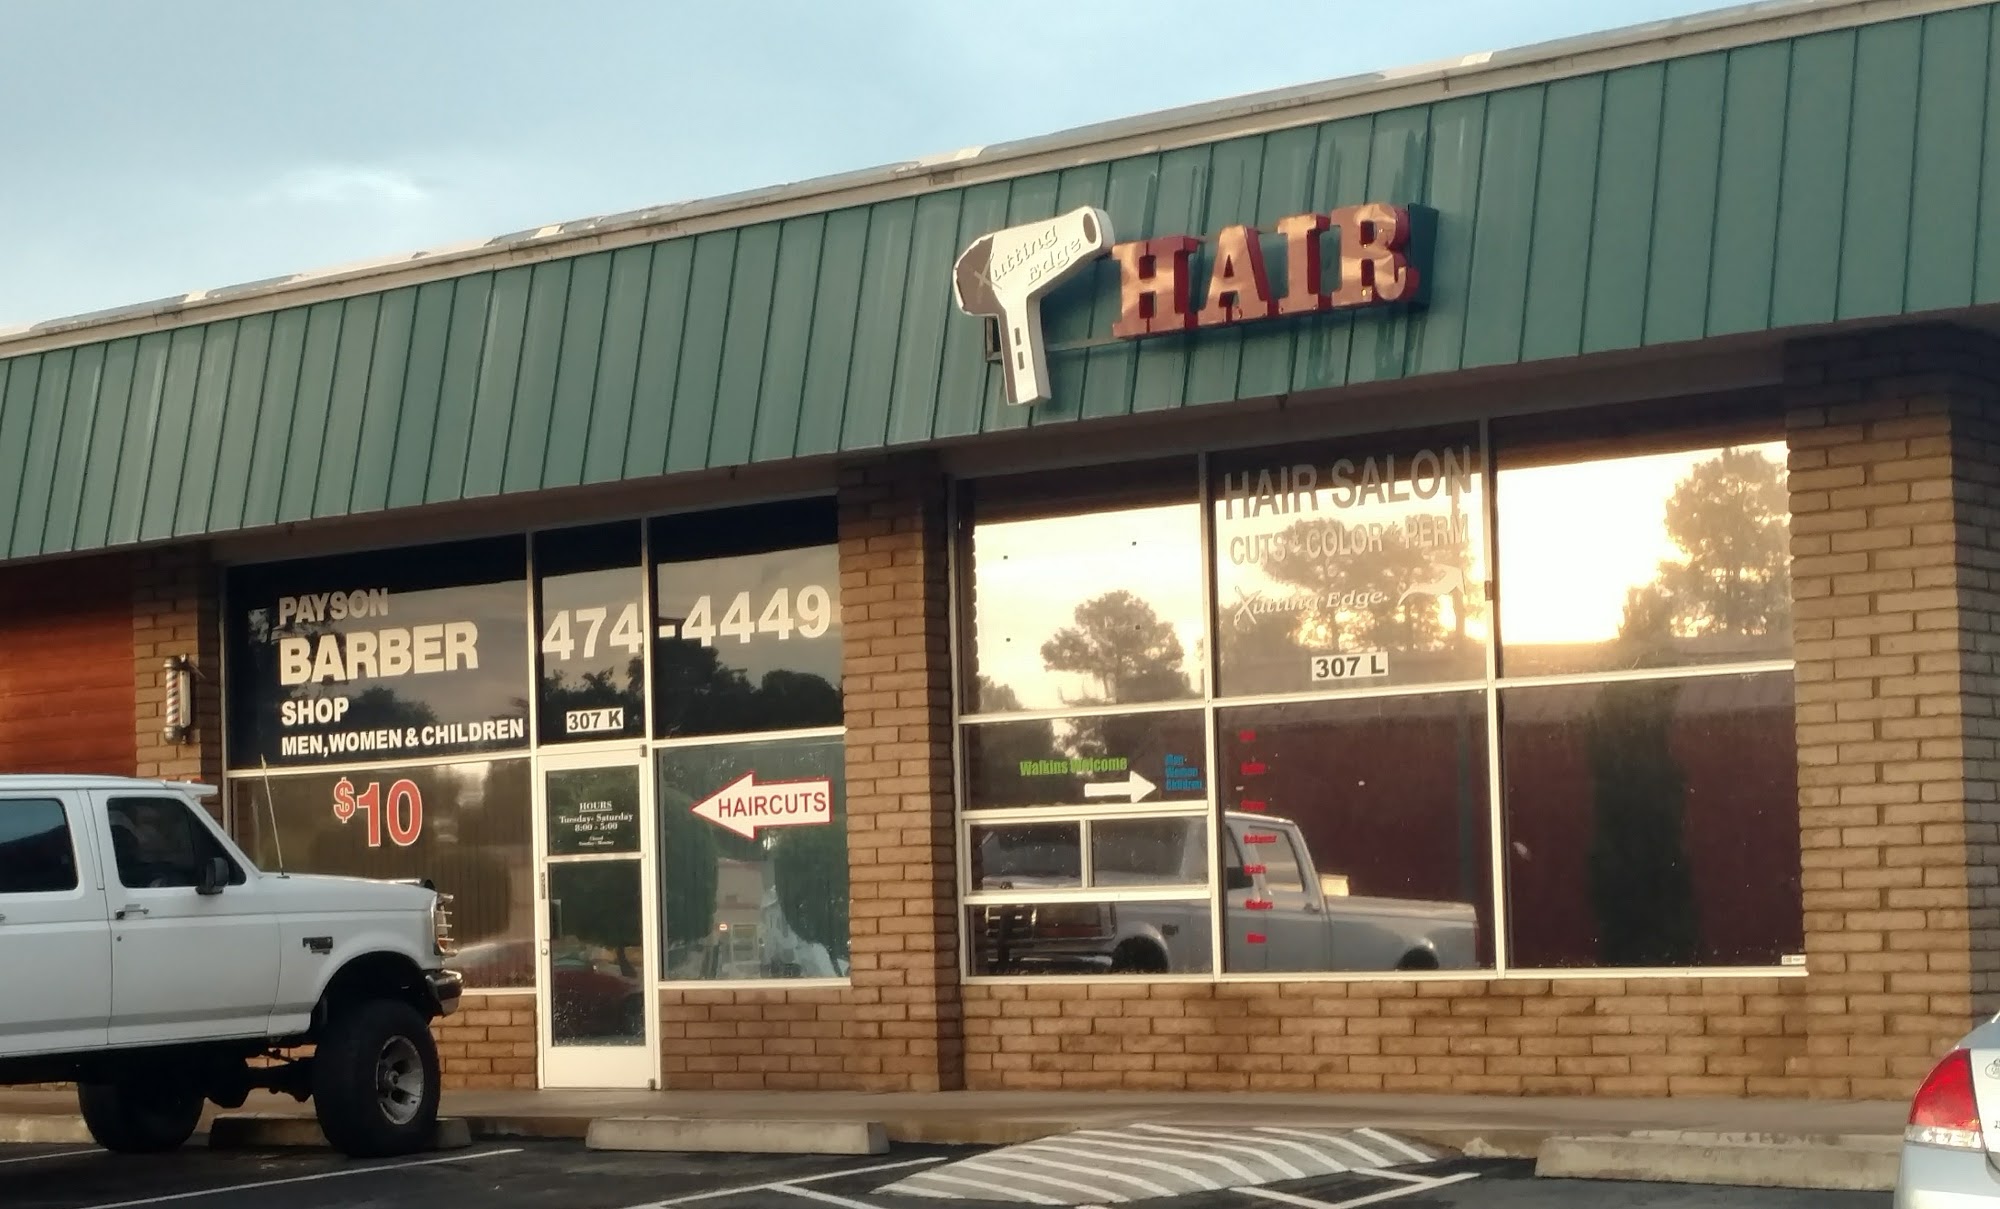 Payson Barber Shop